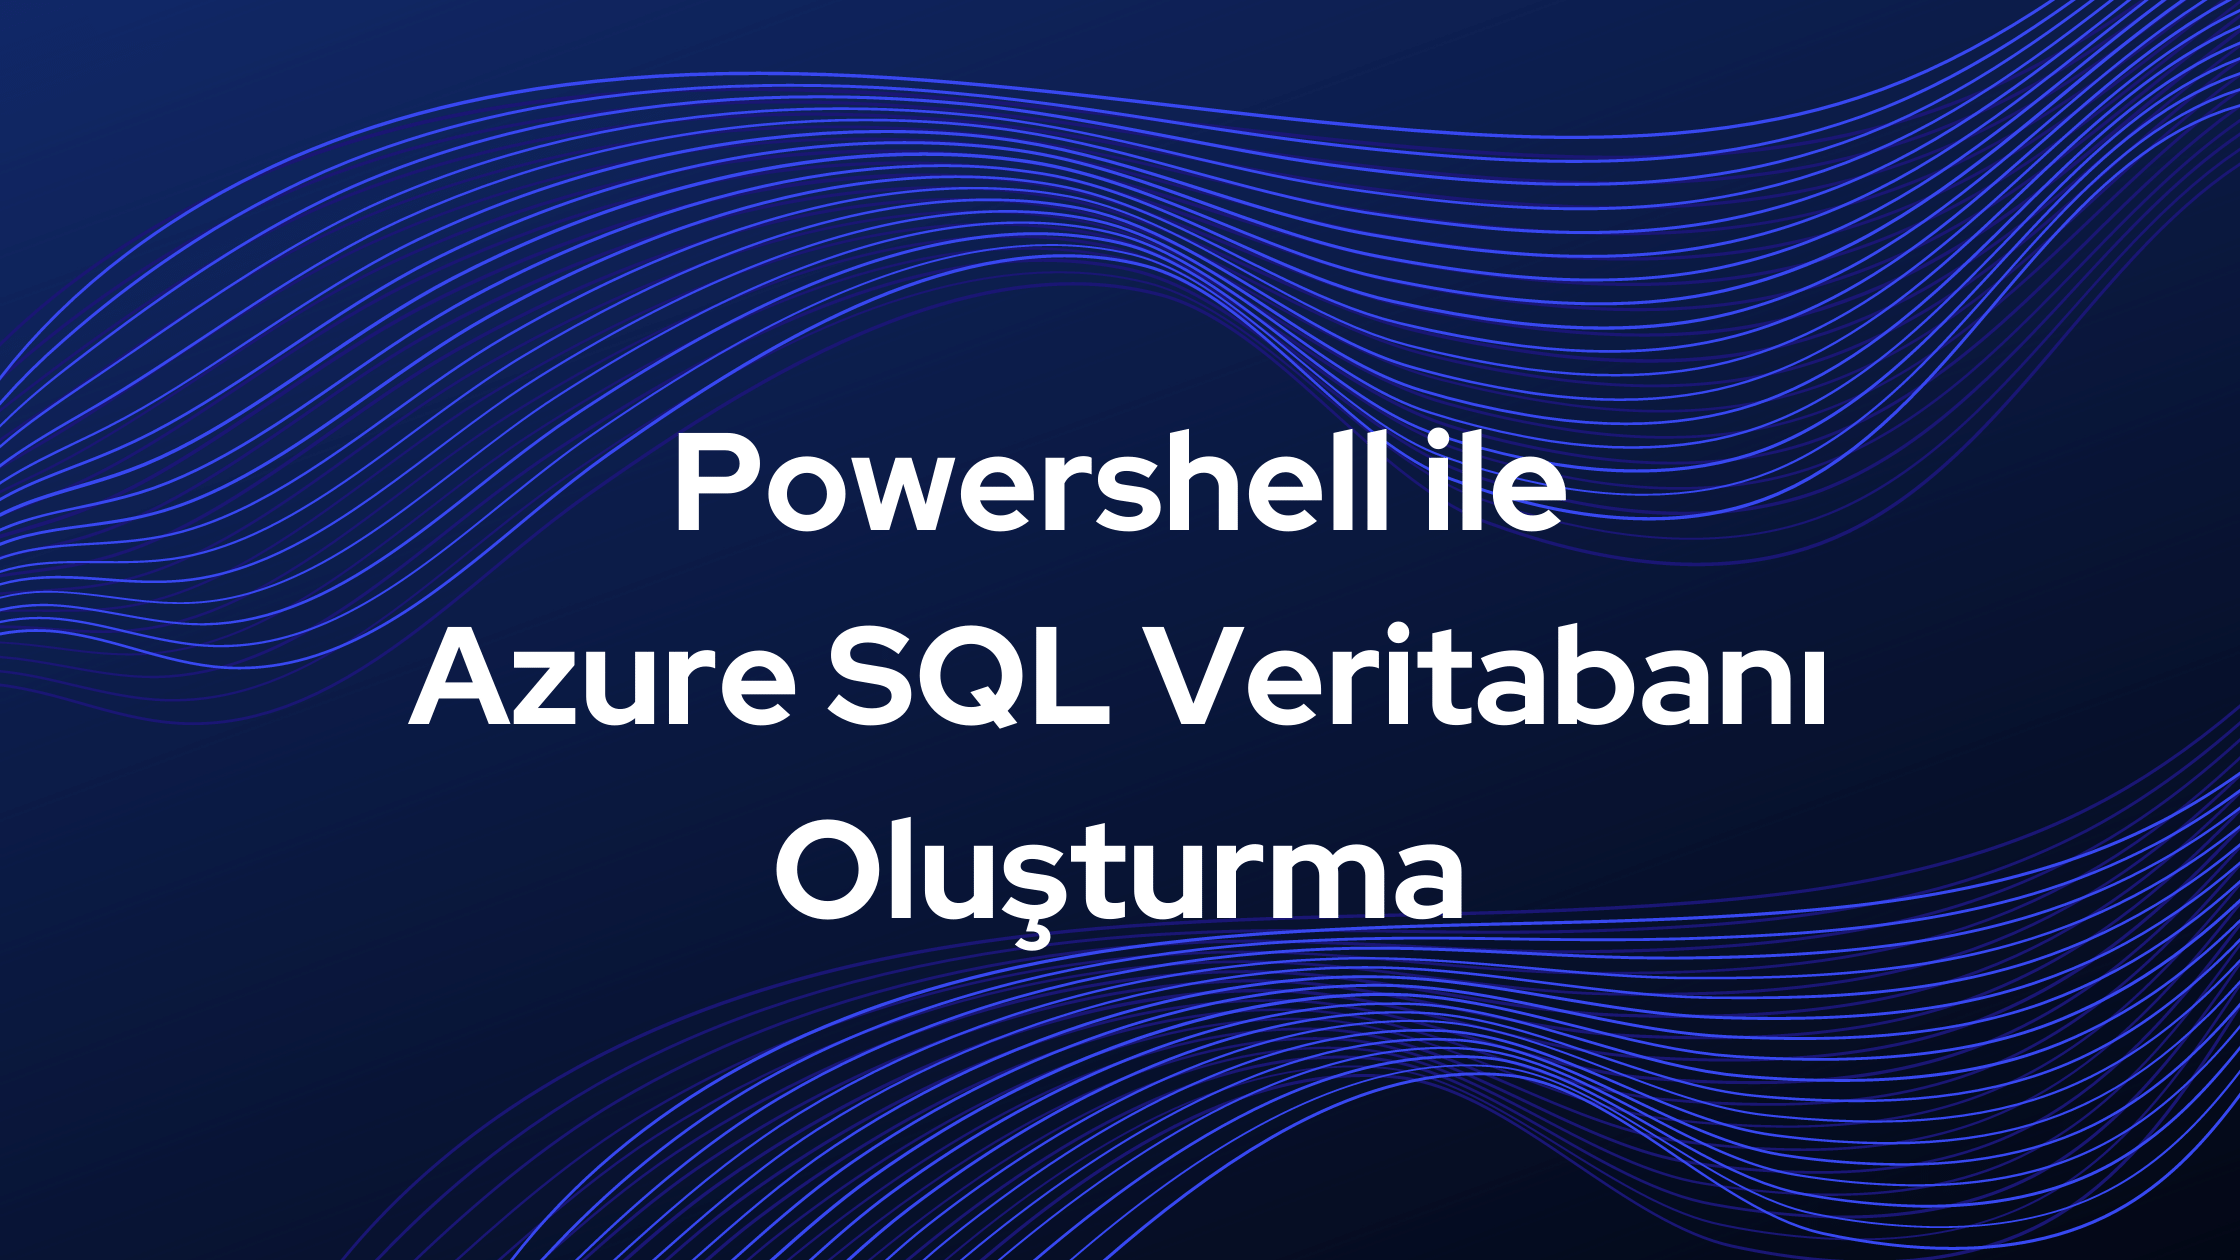 Powershell ile Azure SQL Veritabanı Oluşturma